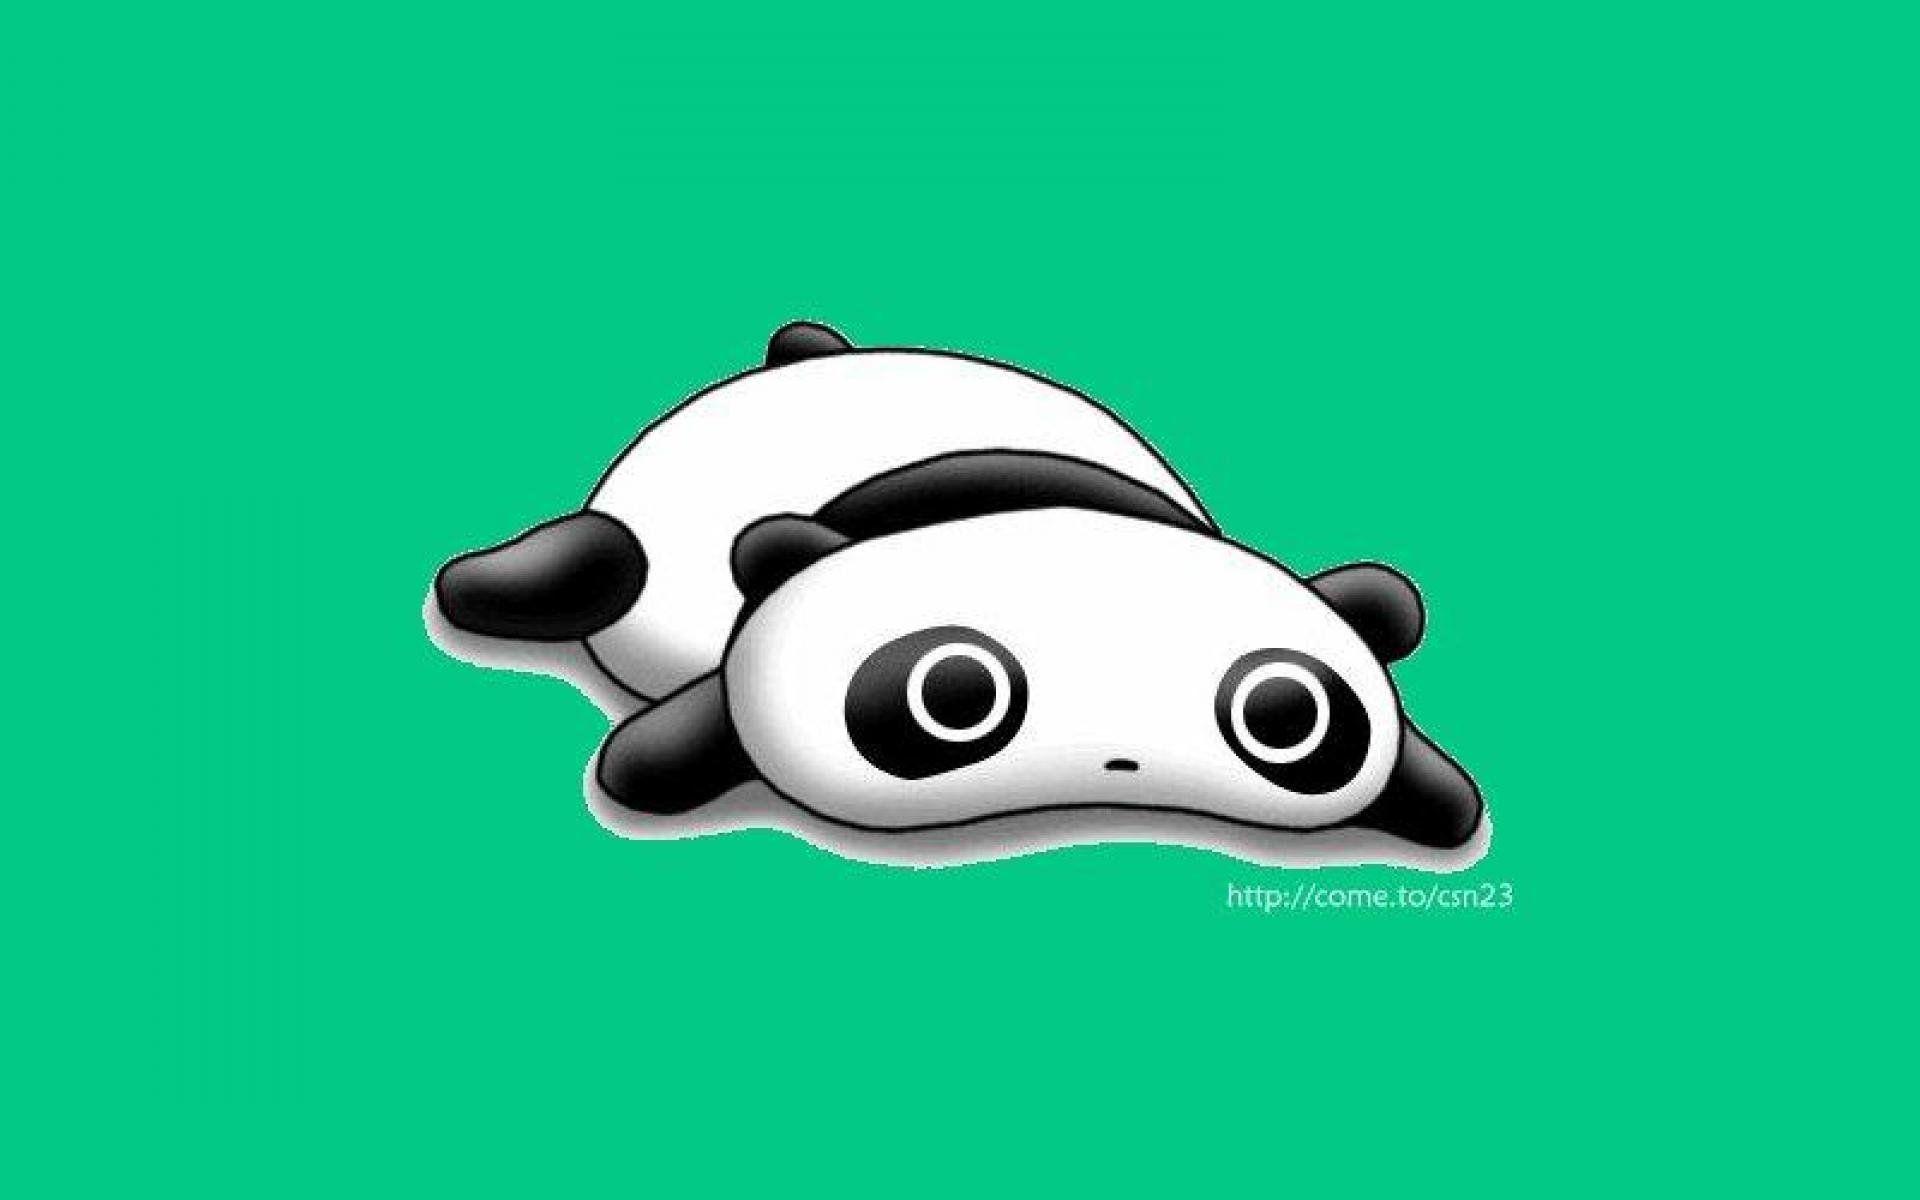 Cute Cartoon Panda